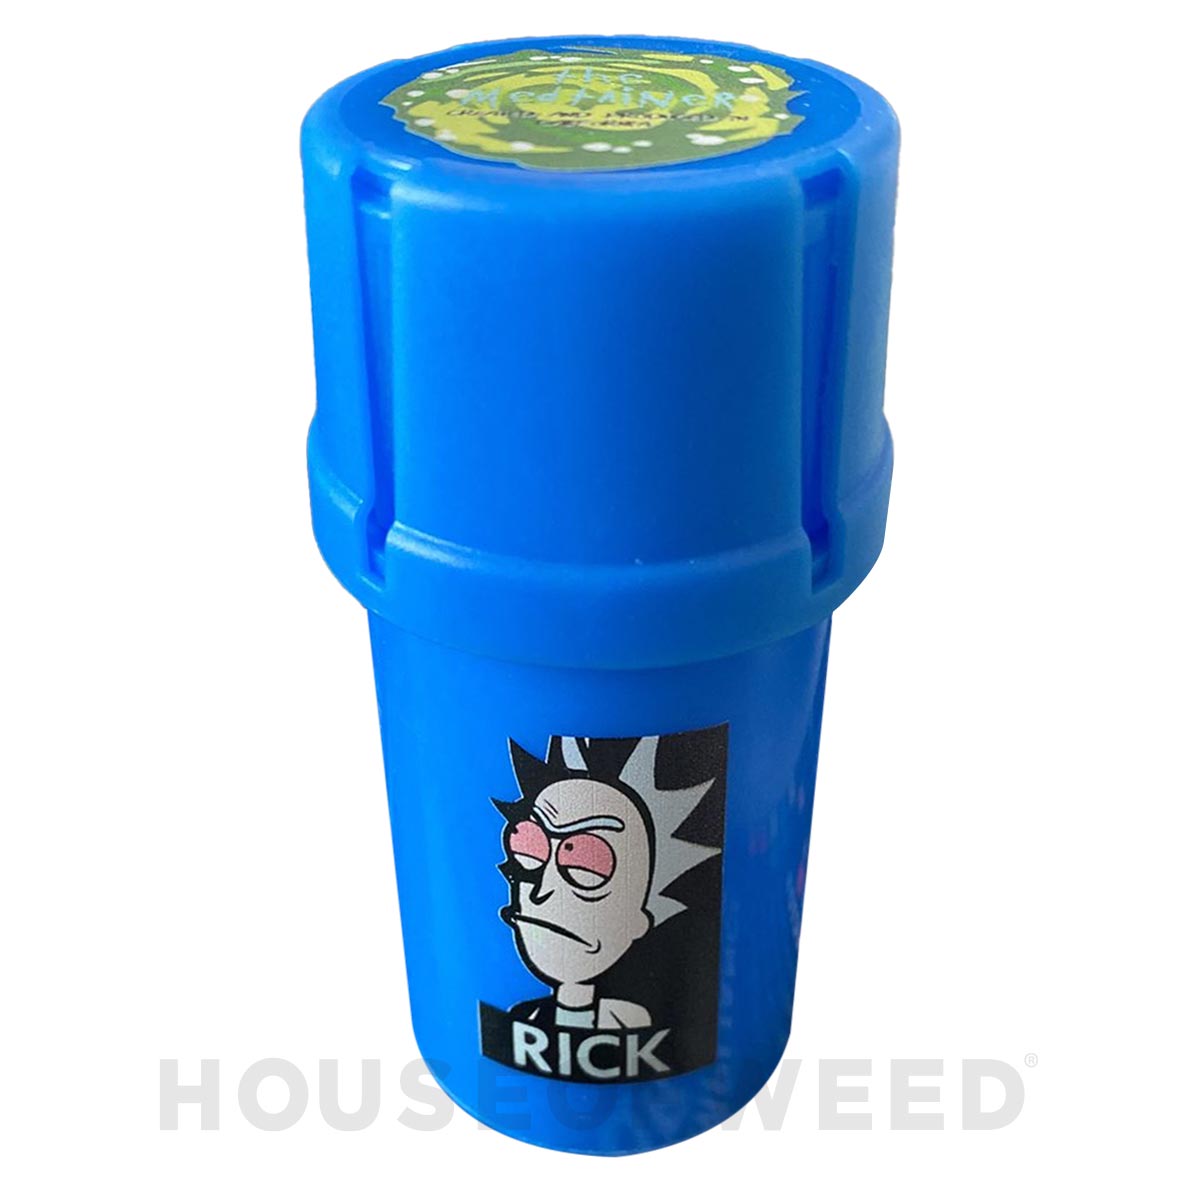 Moledor y contenedor de la marca Medtainer color azul con la figura de Rick de la serie Rick and Morty